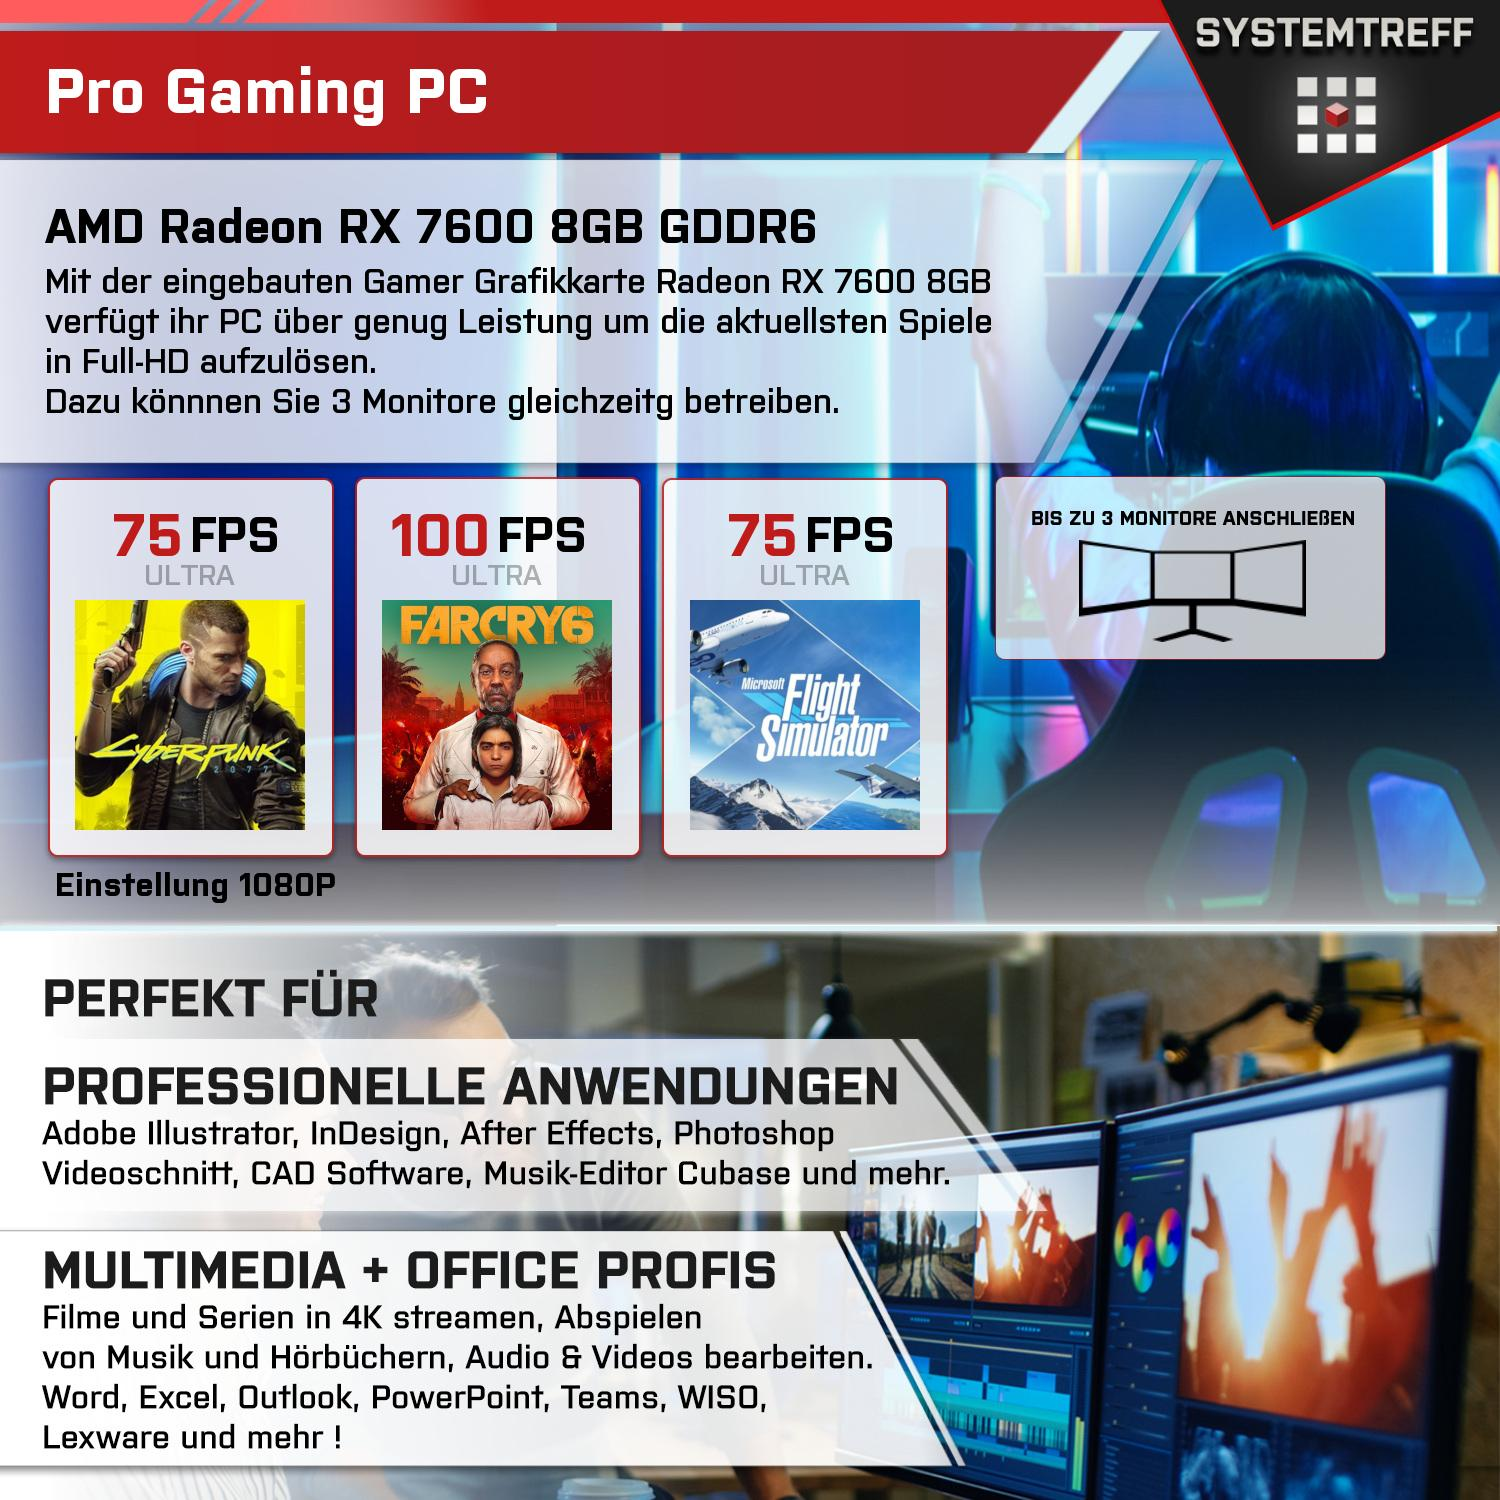 SYSTEMTREFF Gaming Komplett 8 32 GB GB 7 7600 mit 8GB 7700 1000 Komplett mSSD, Prozessor, GB GDDR6, 7700, RAM, AMD AMD Radeon PC Ryzen RX